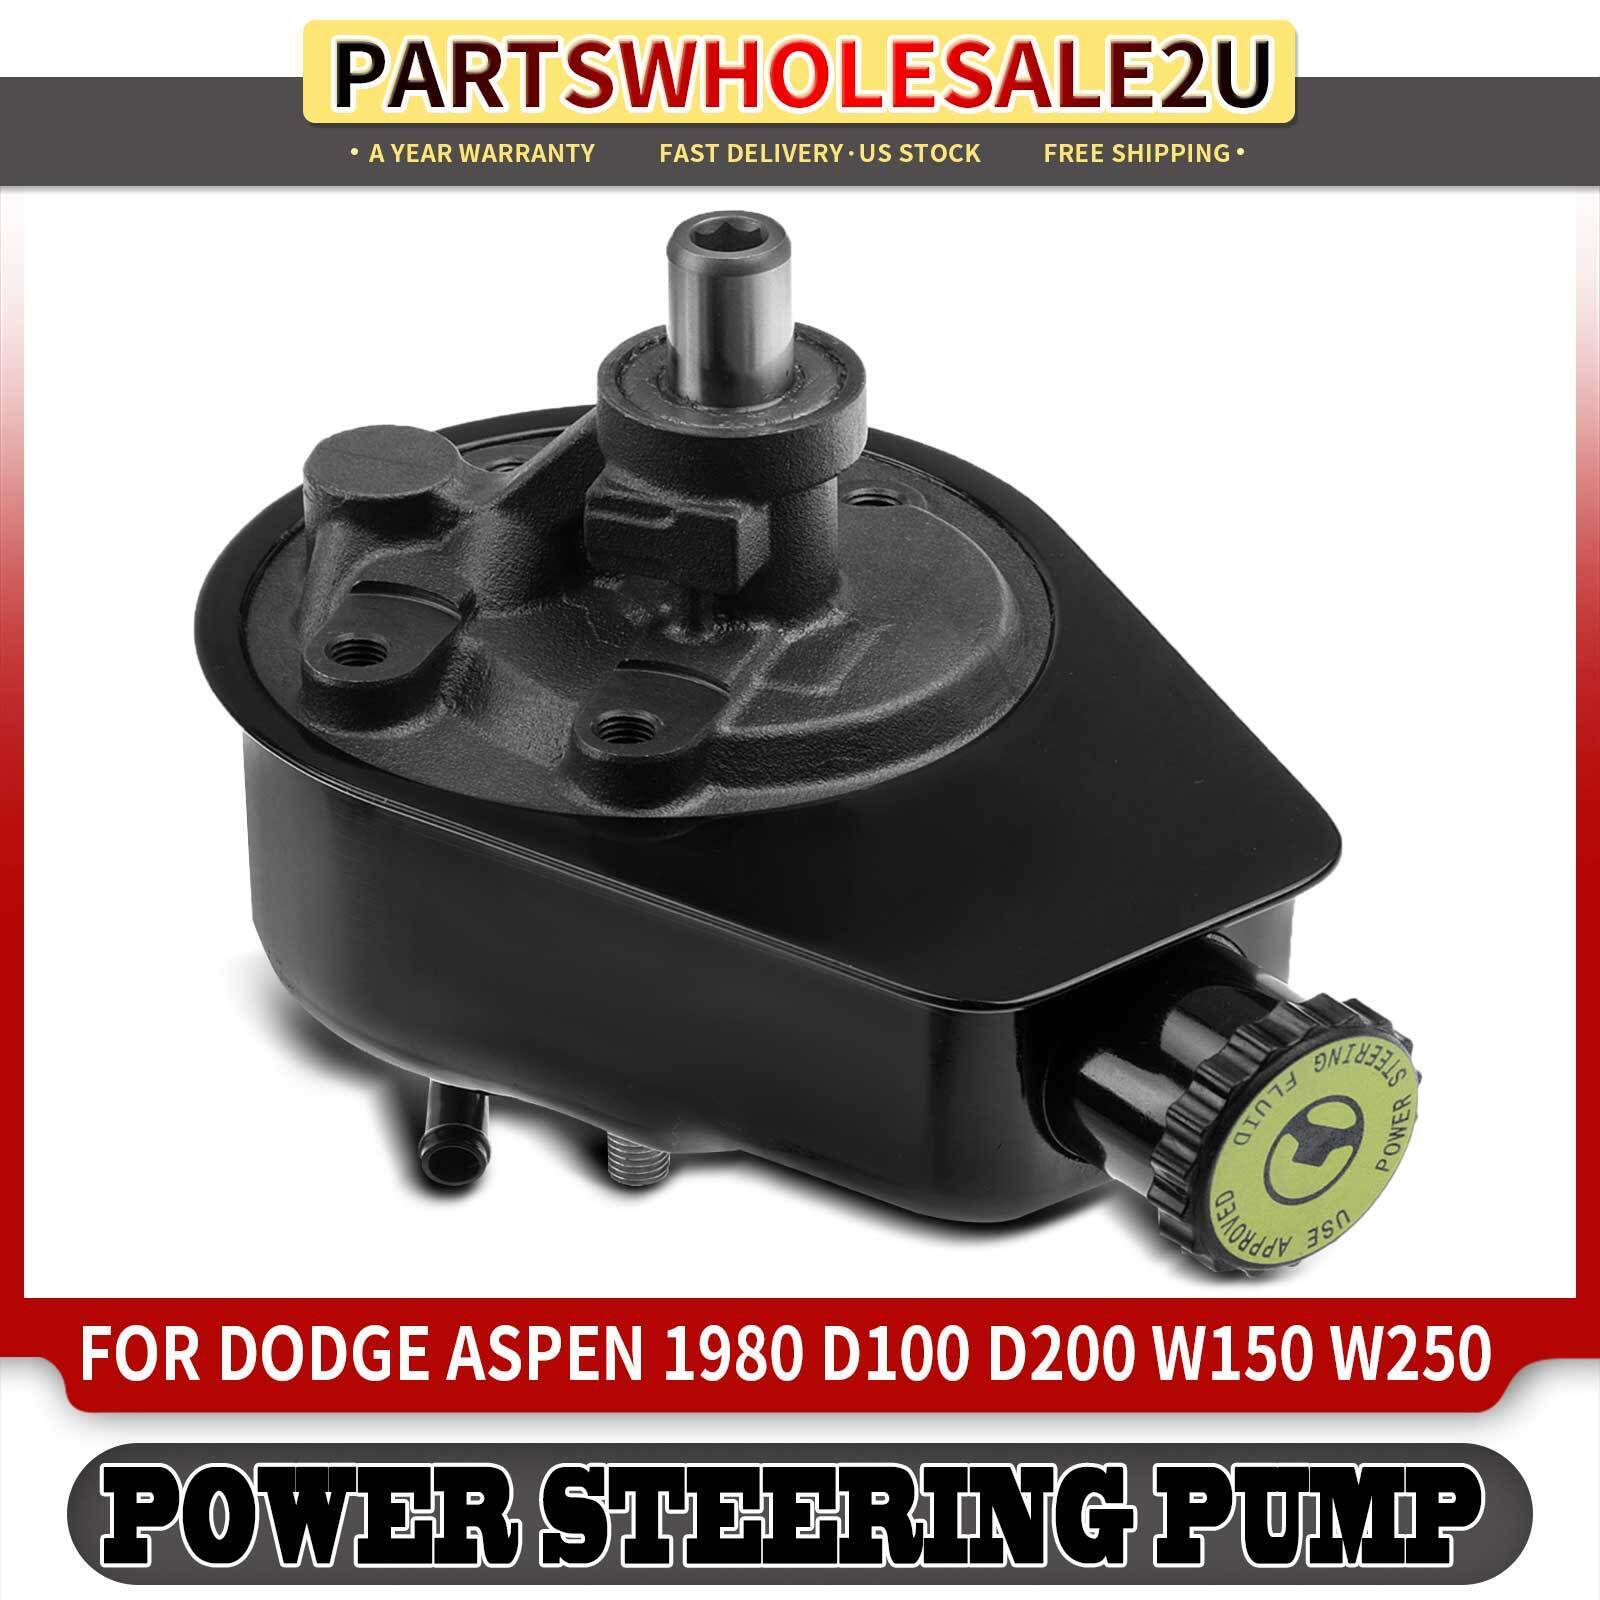 Power Steering Pump w/Reservoir for Dodge Dakota Aspen Chrysler Cordoba Plymouth